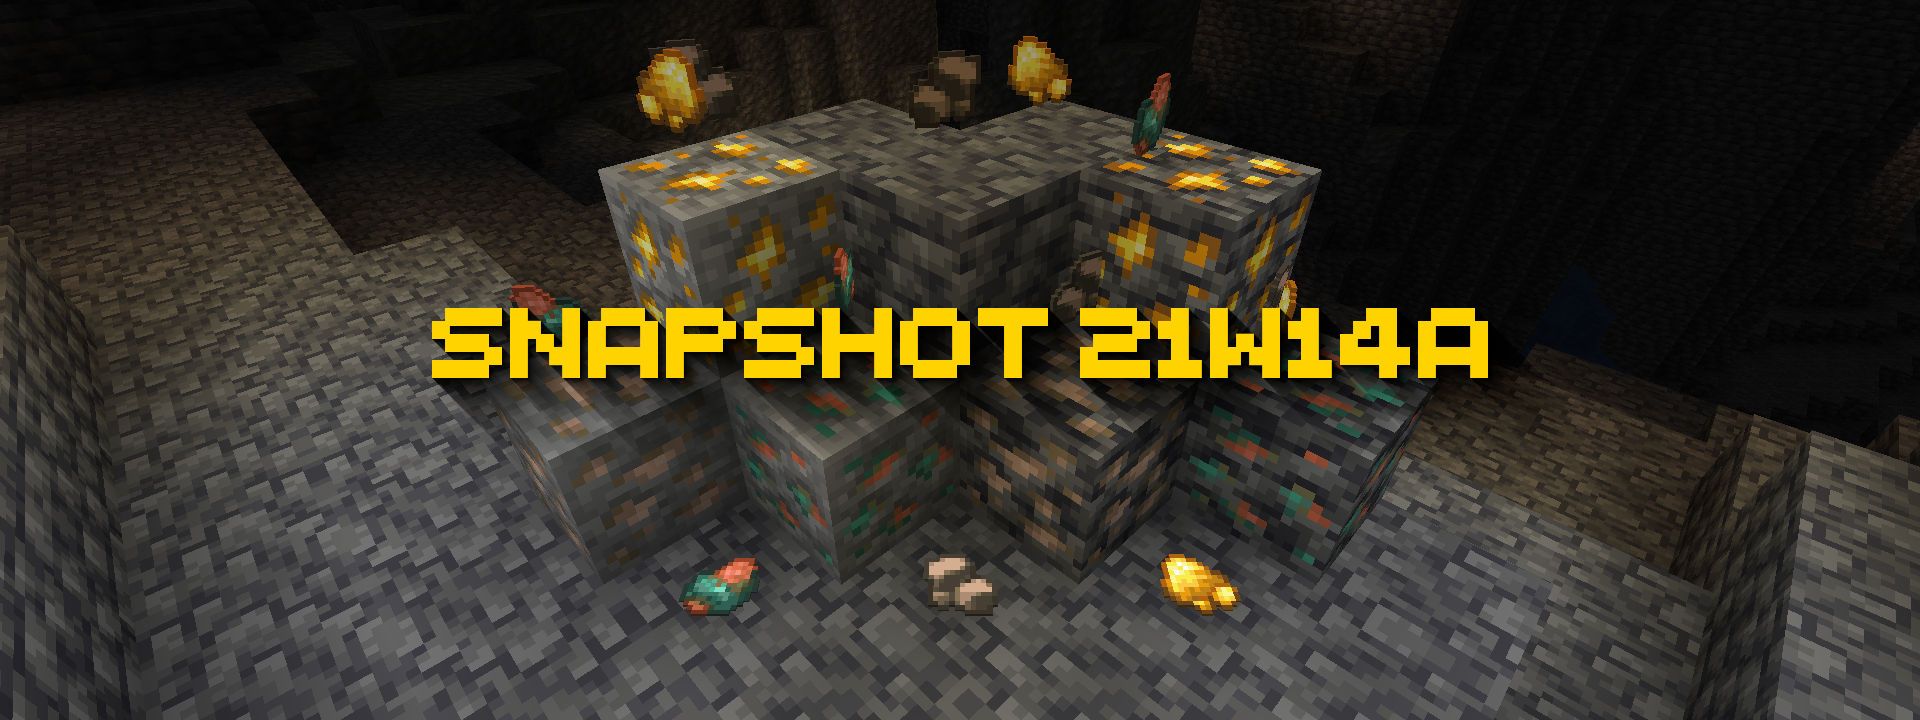 Minecraft Snapshot 21w14a